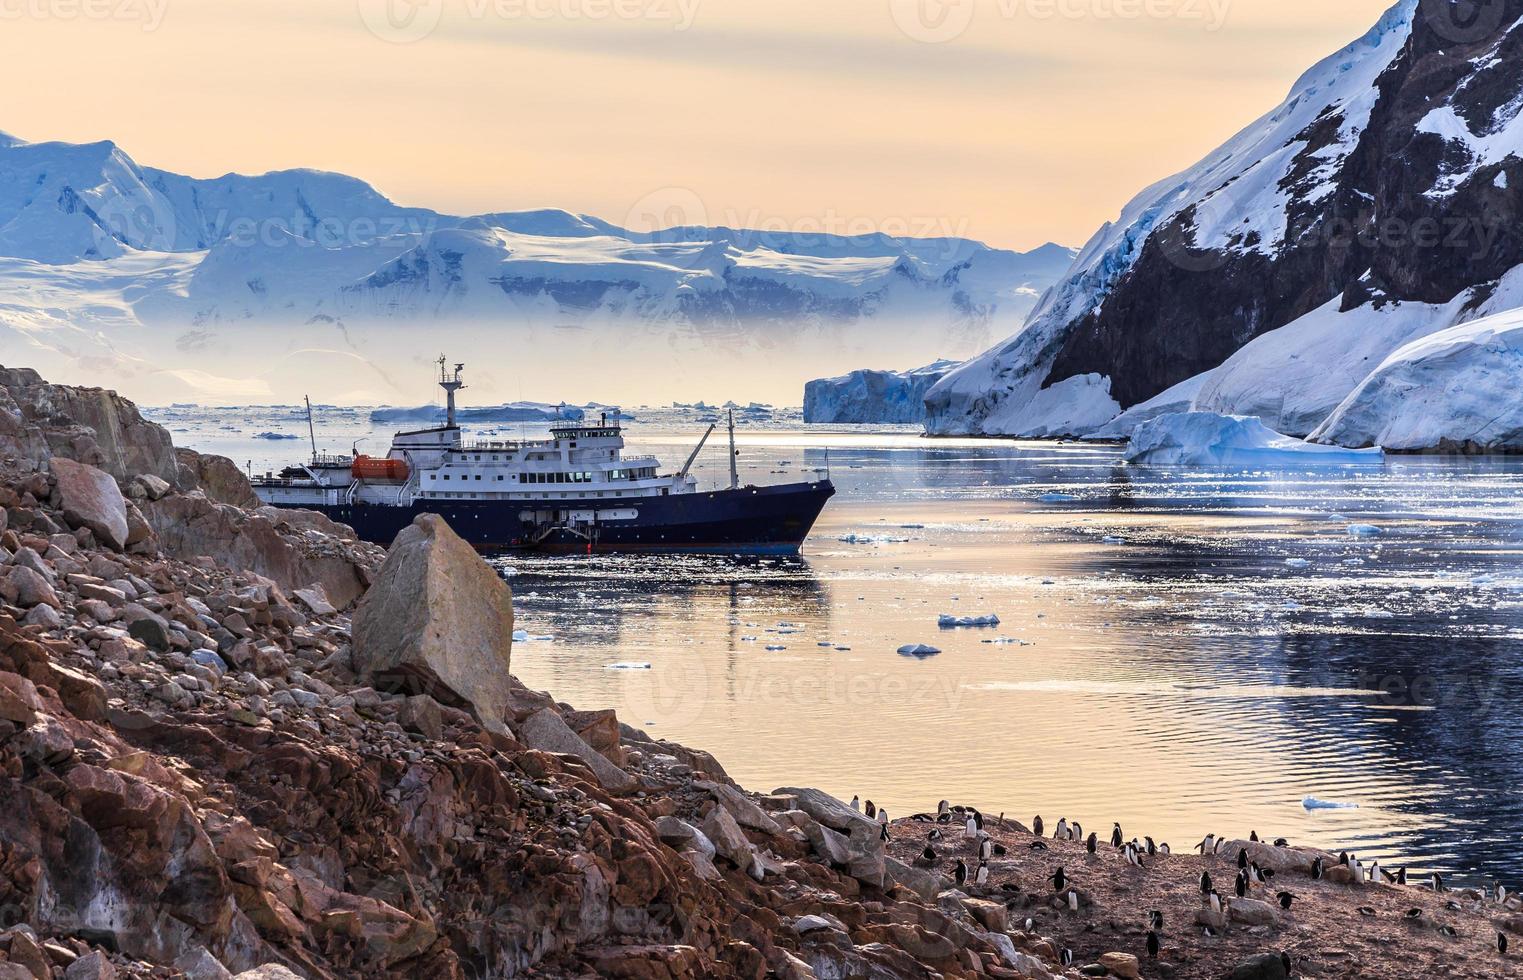 crucero antártico entre icebergs y pingüinos gentoo reunidos en la costa rocosa de la bahía neco, antártida foto